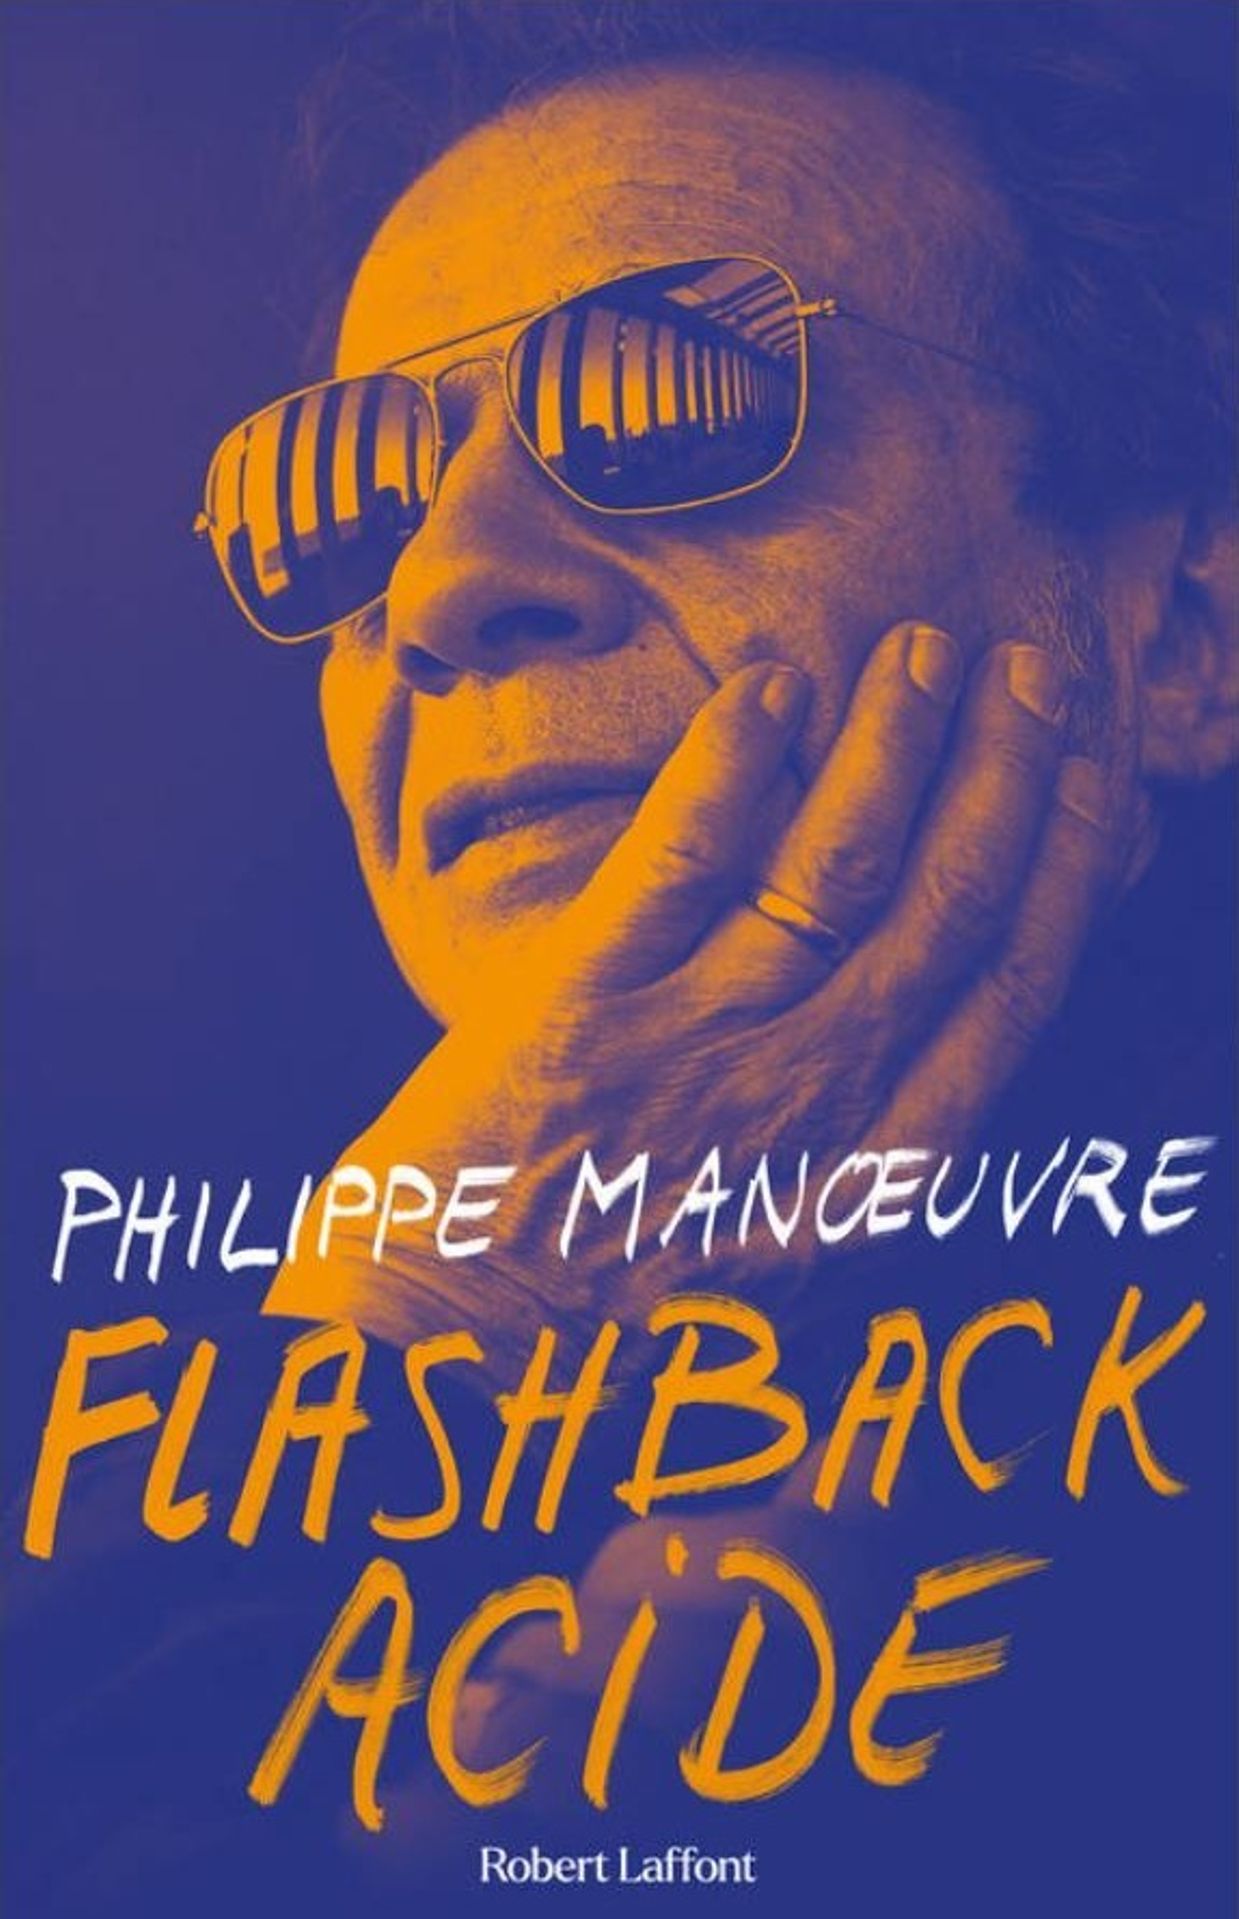 Flashback Acide, 2e volet des mémoires de Philippe Manoeuvre